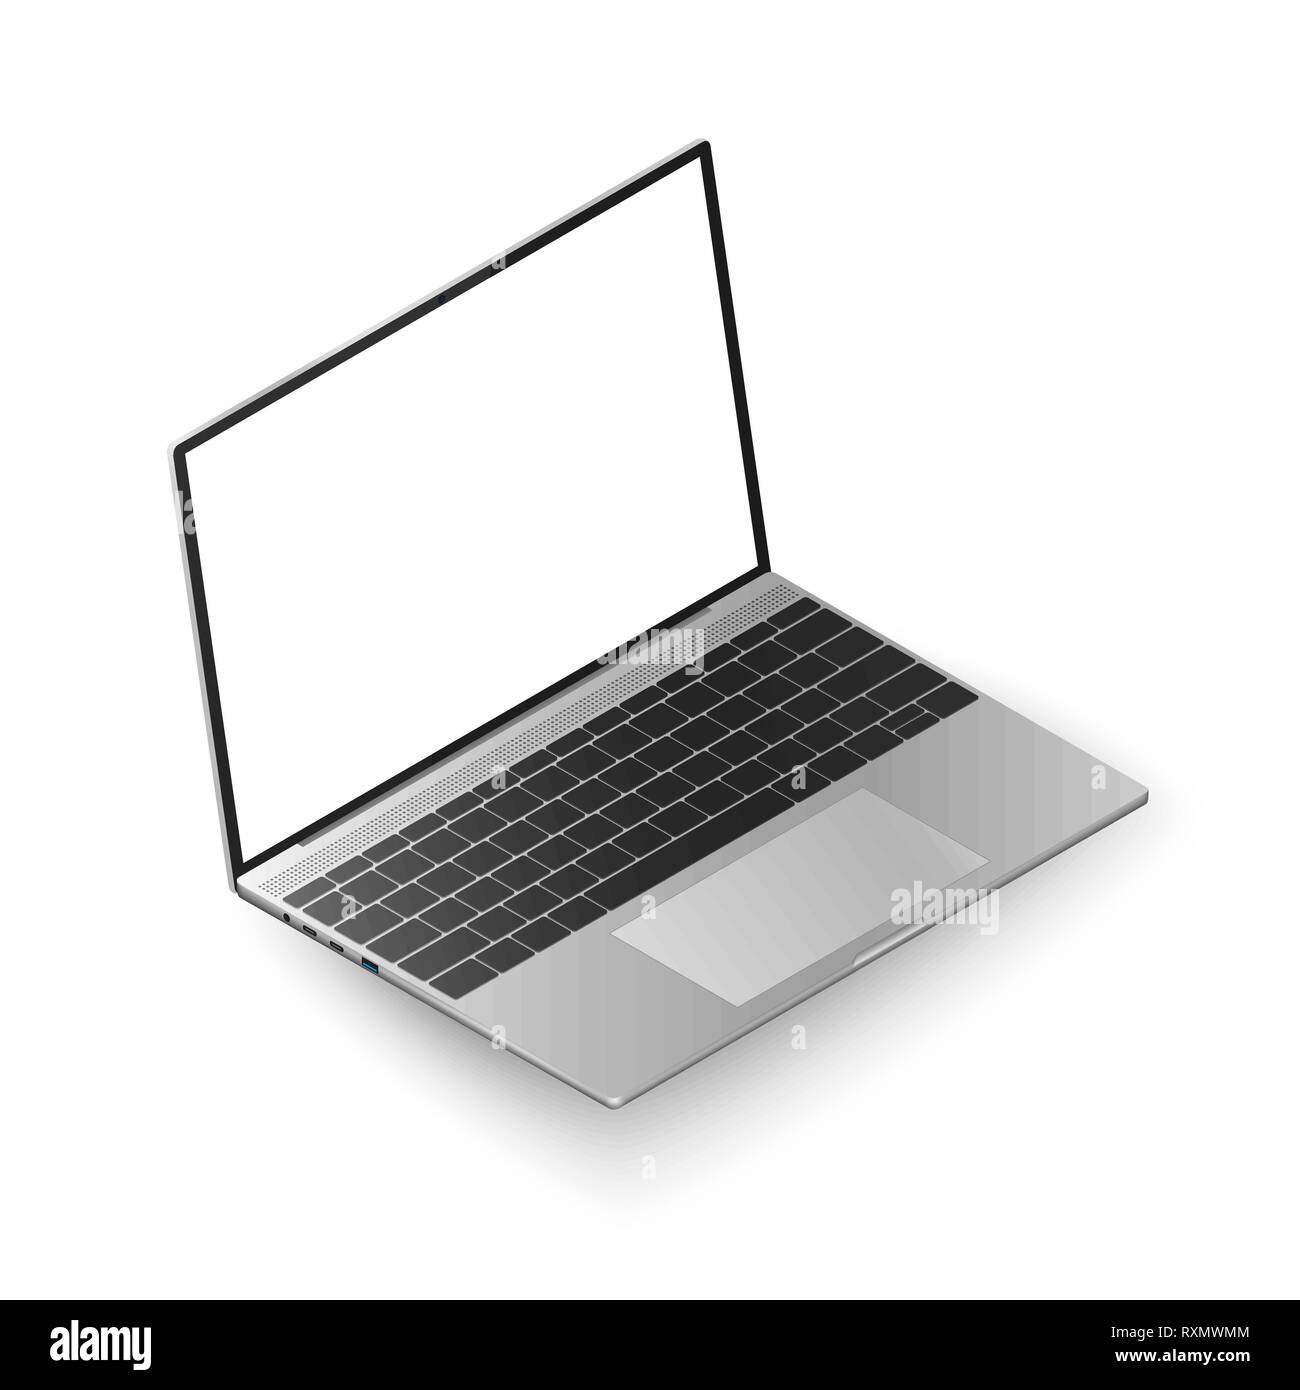 Laptop vista isometrica. Realistico portatile con display bianco per i tuoi dati. Illustrazione di vettore isolato su sfondo bianco Illustrazione Vettoriale